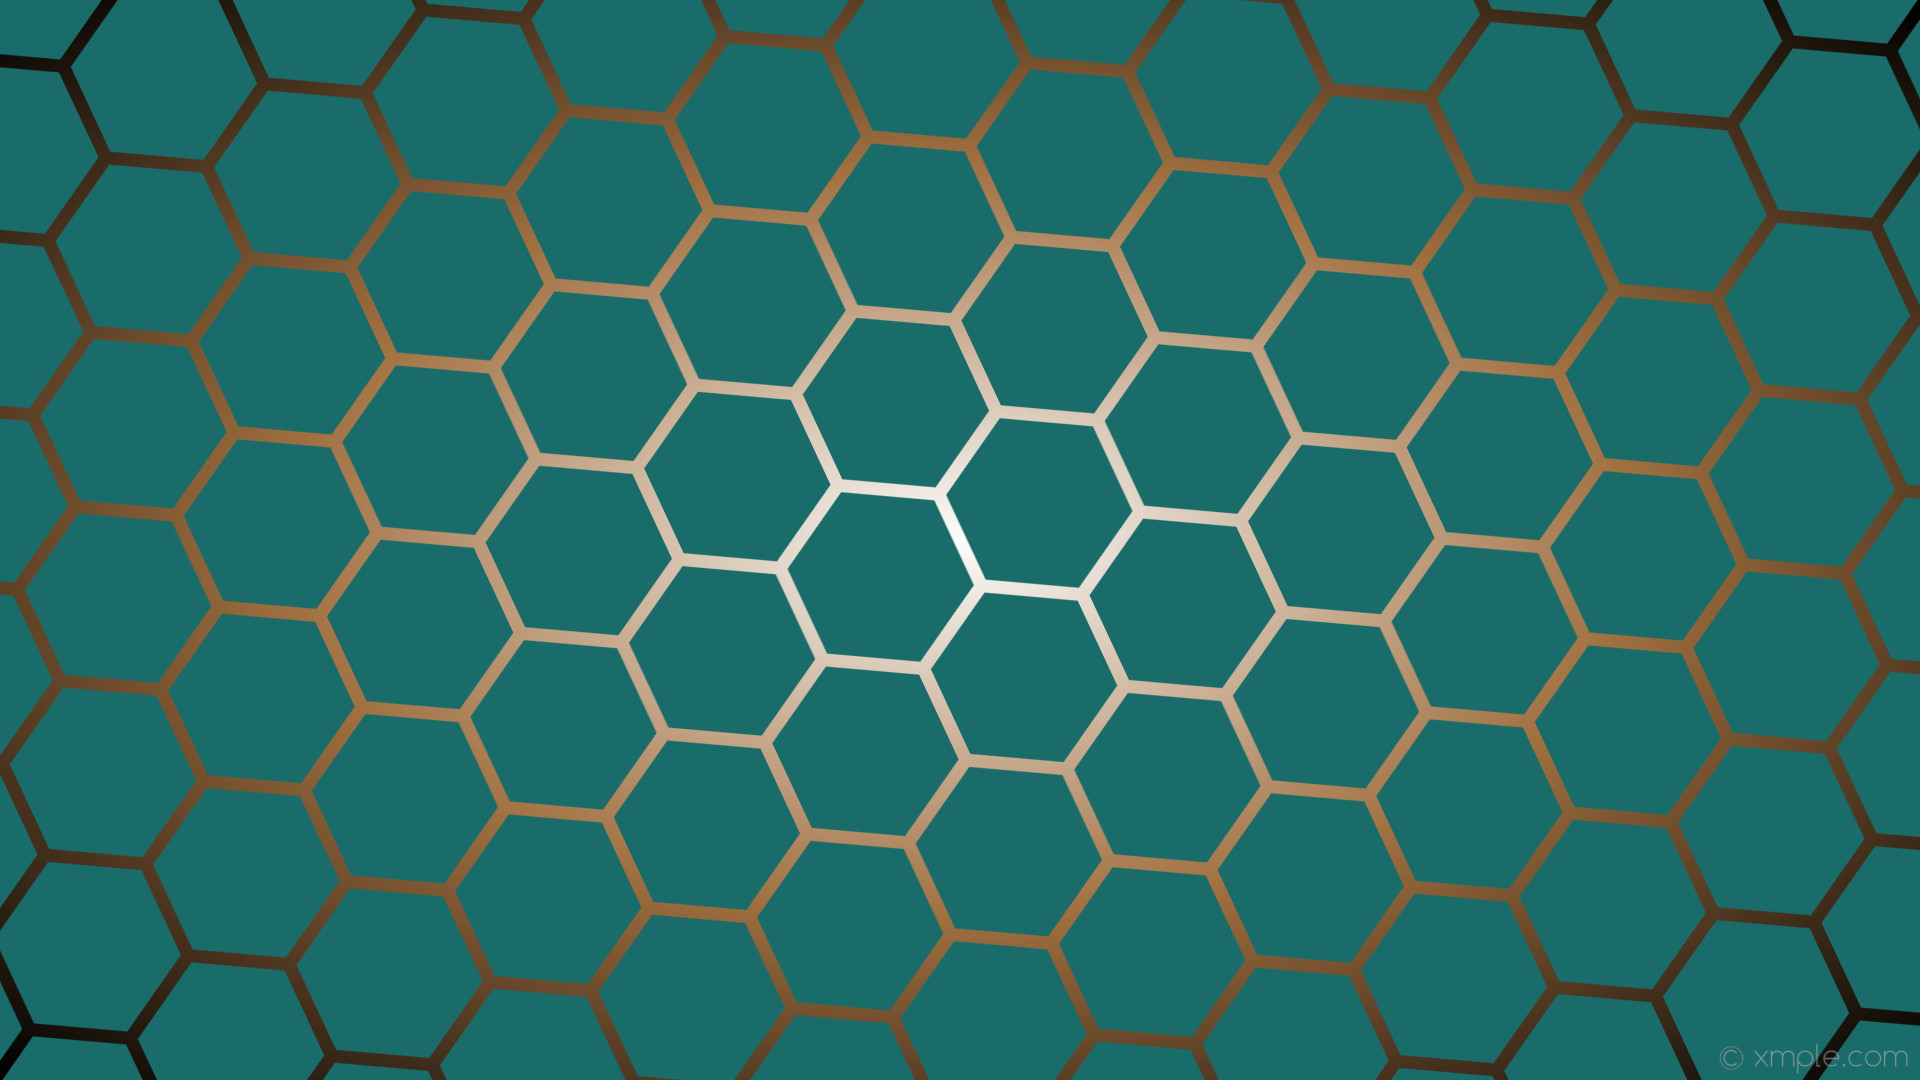 1920x1080 wallpaper cyan gradient hexagon white black glow orange #1a6c6a #ffffff  #a37040 diagonal 25